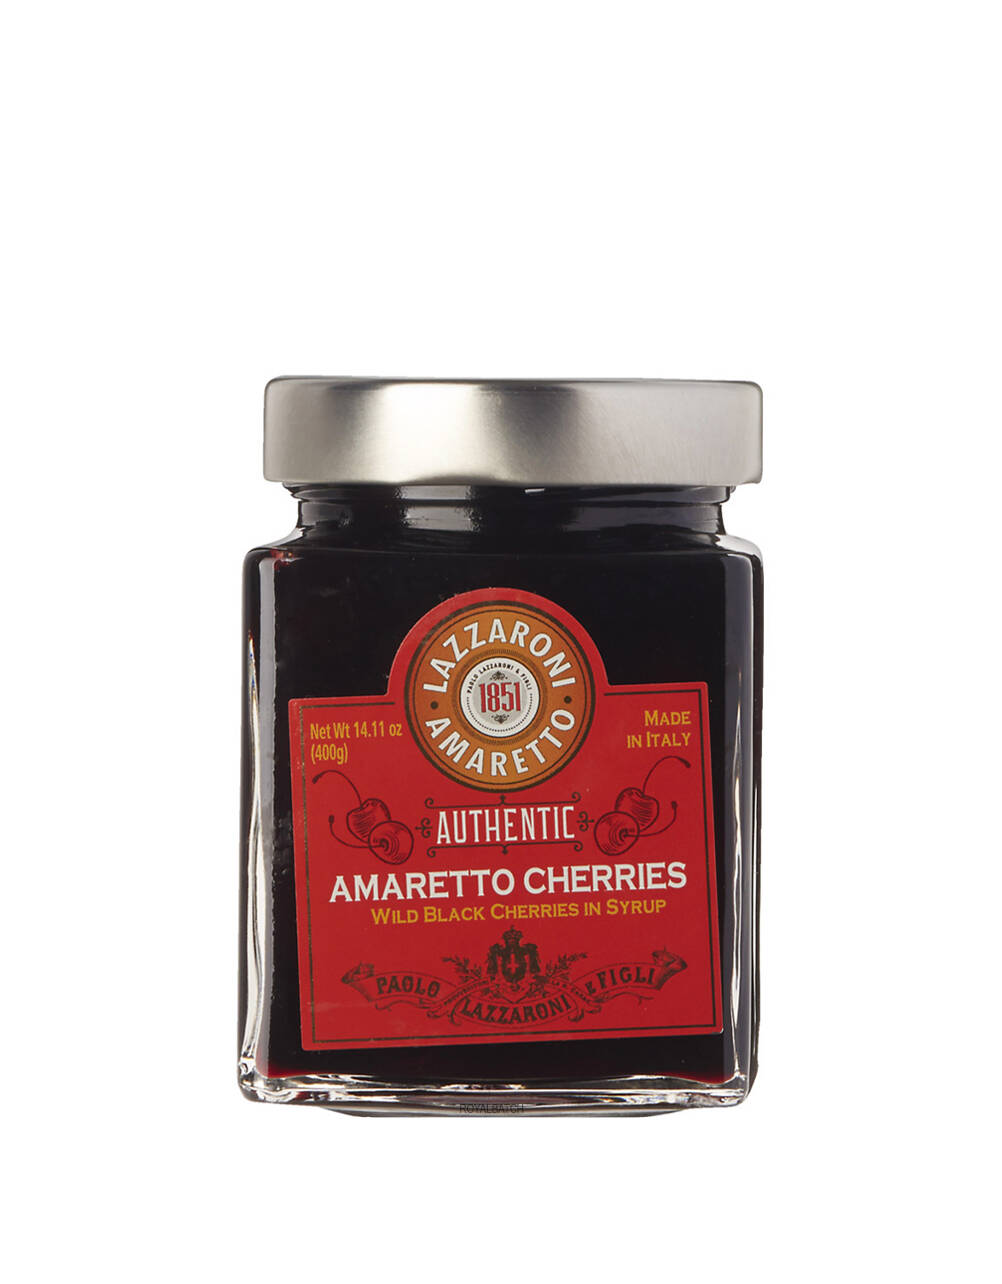 Lazzaroni Amaretto Wild Black Cherries in Syrup 14.11 oz